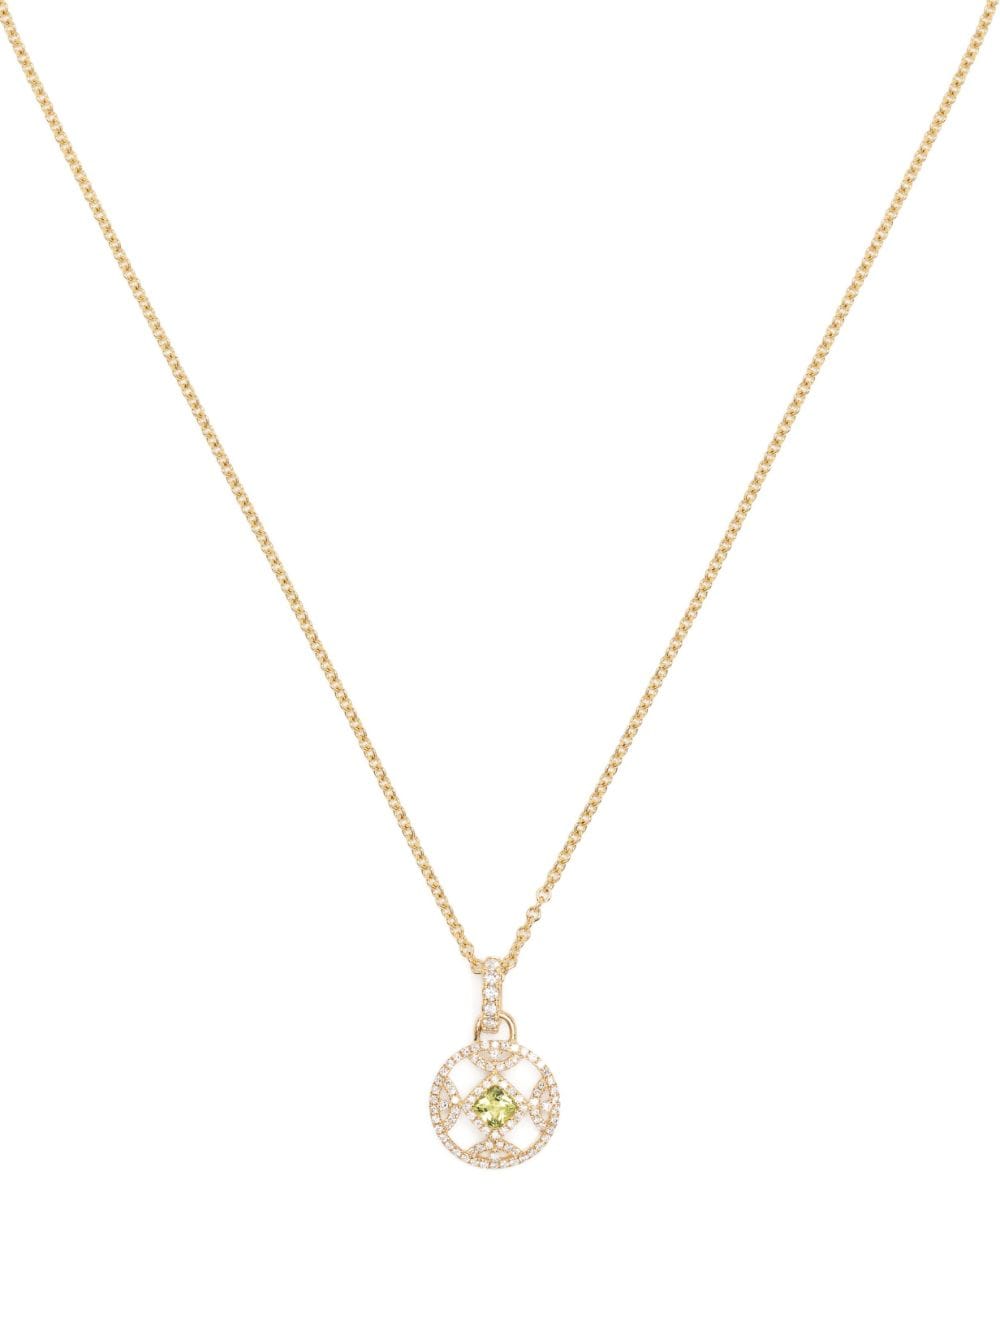 Kiki McDonough 18kt yellow gold Firefly diamond and peridot necklace